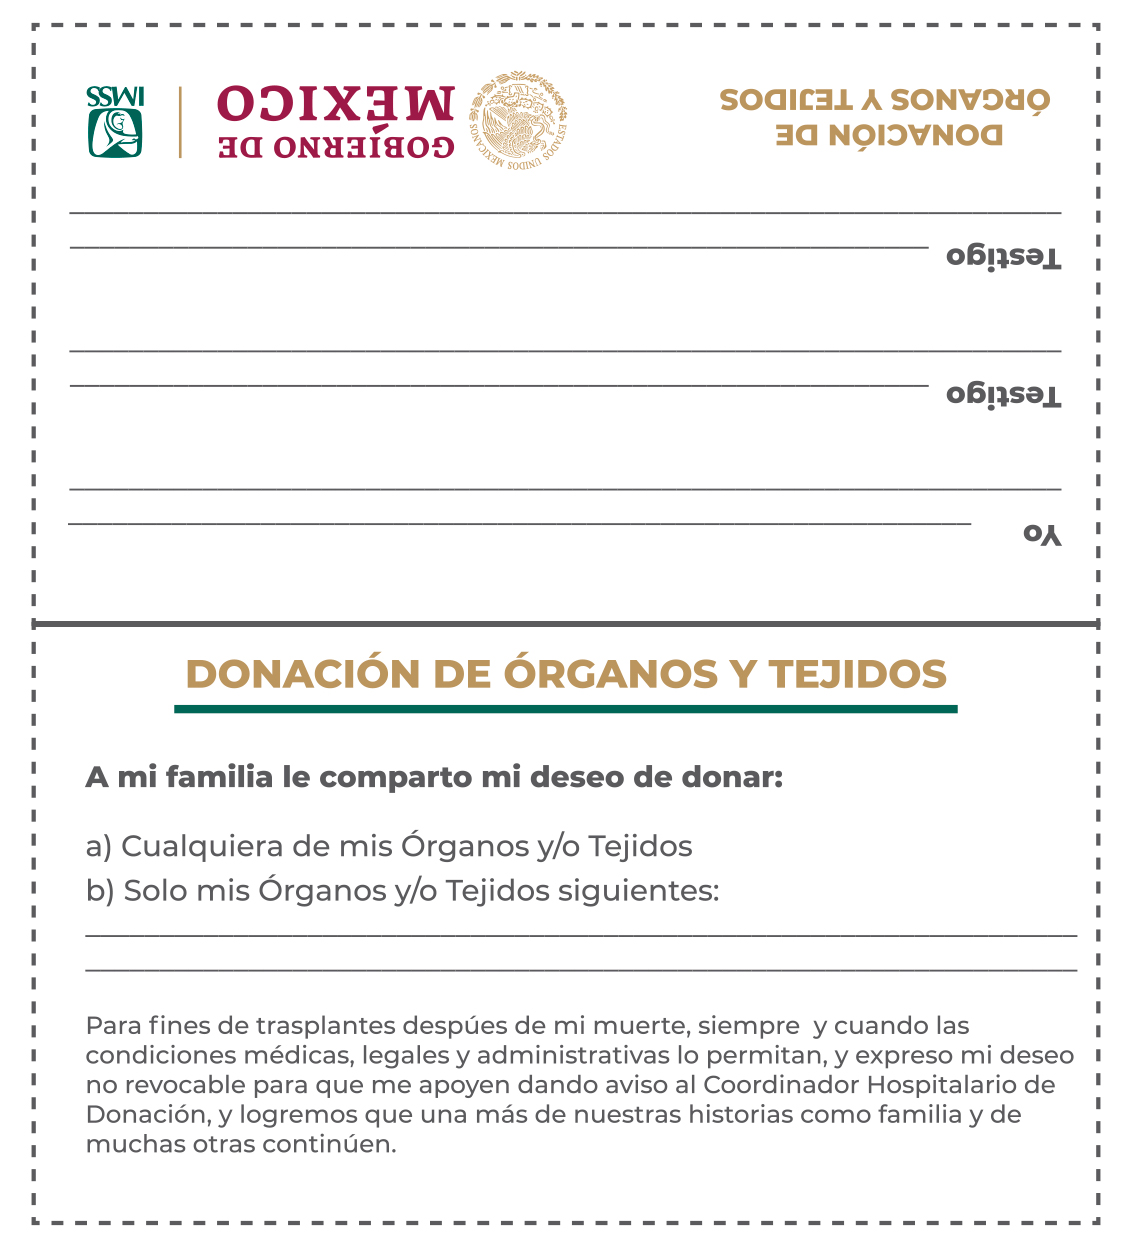 Tarjeta de donador de órganos y tejidos.